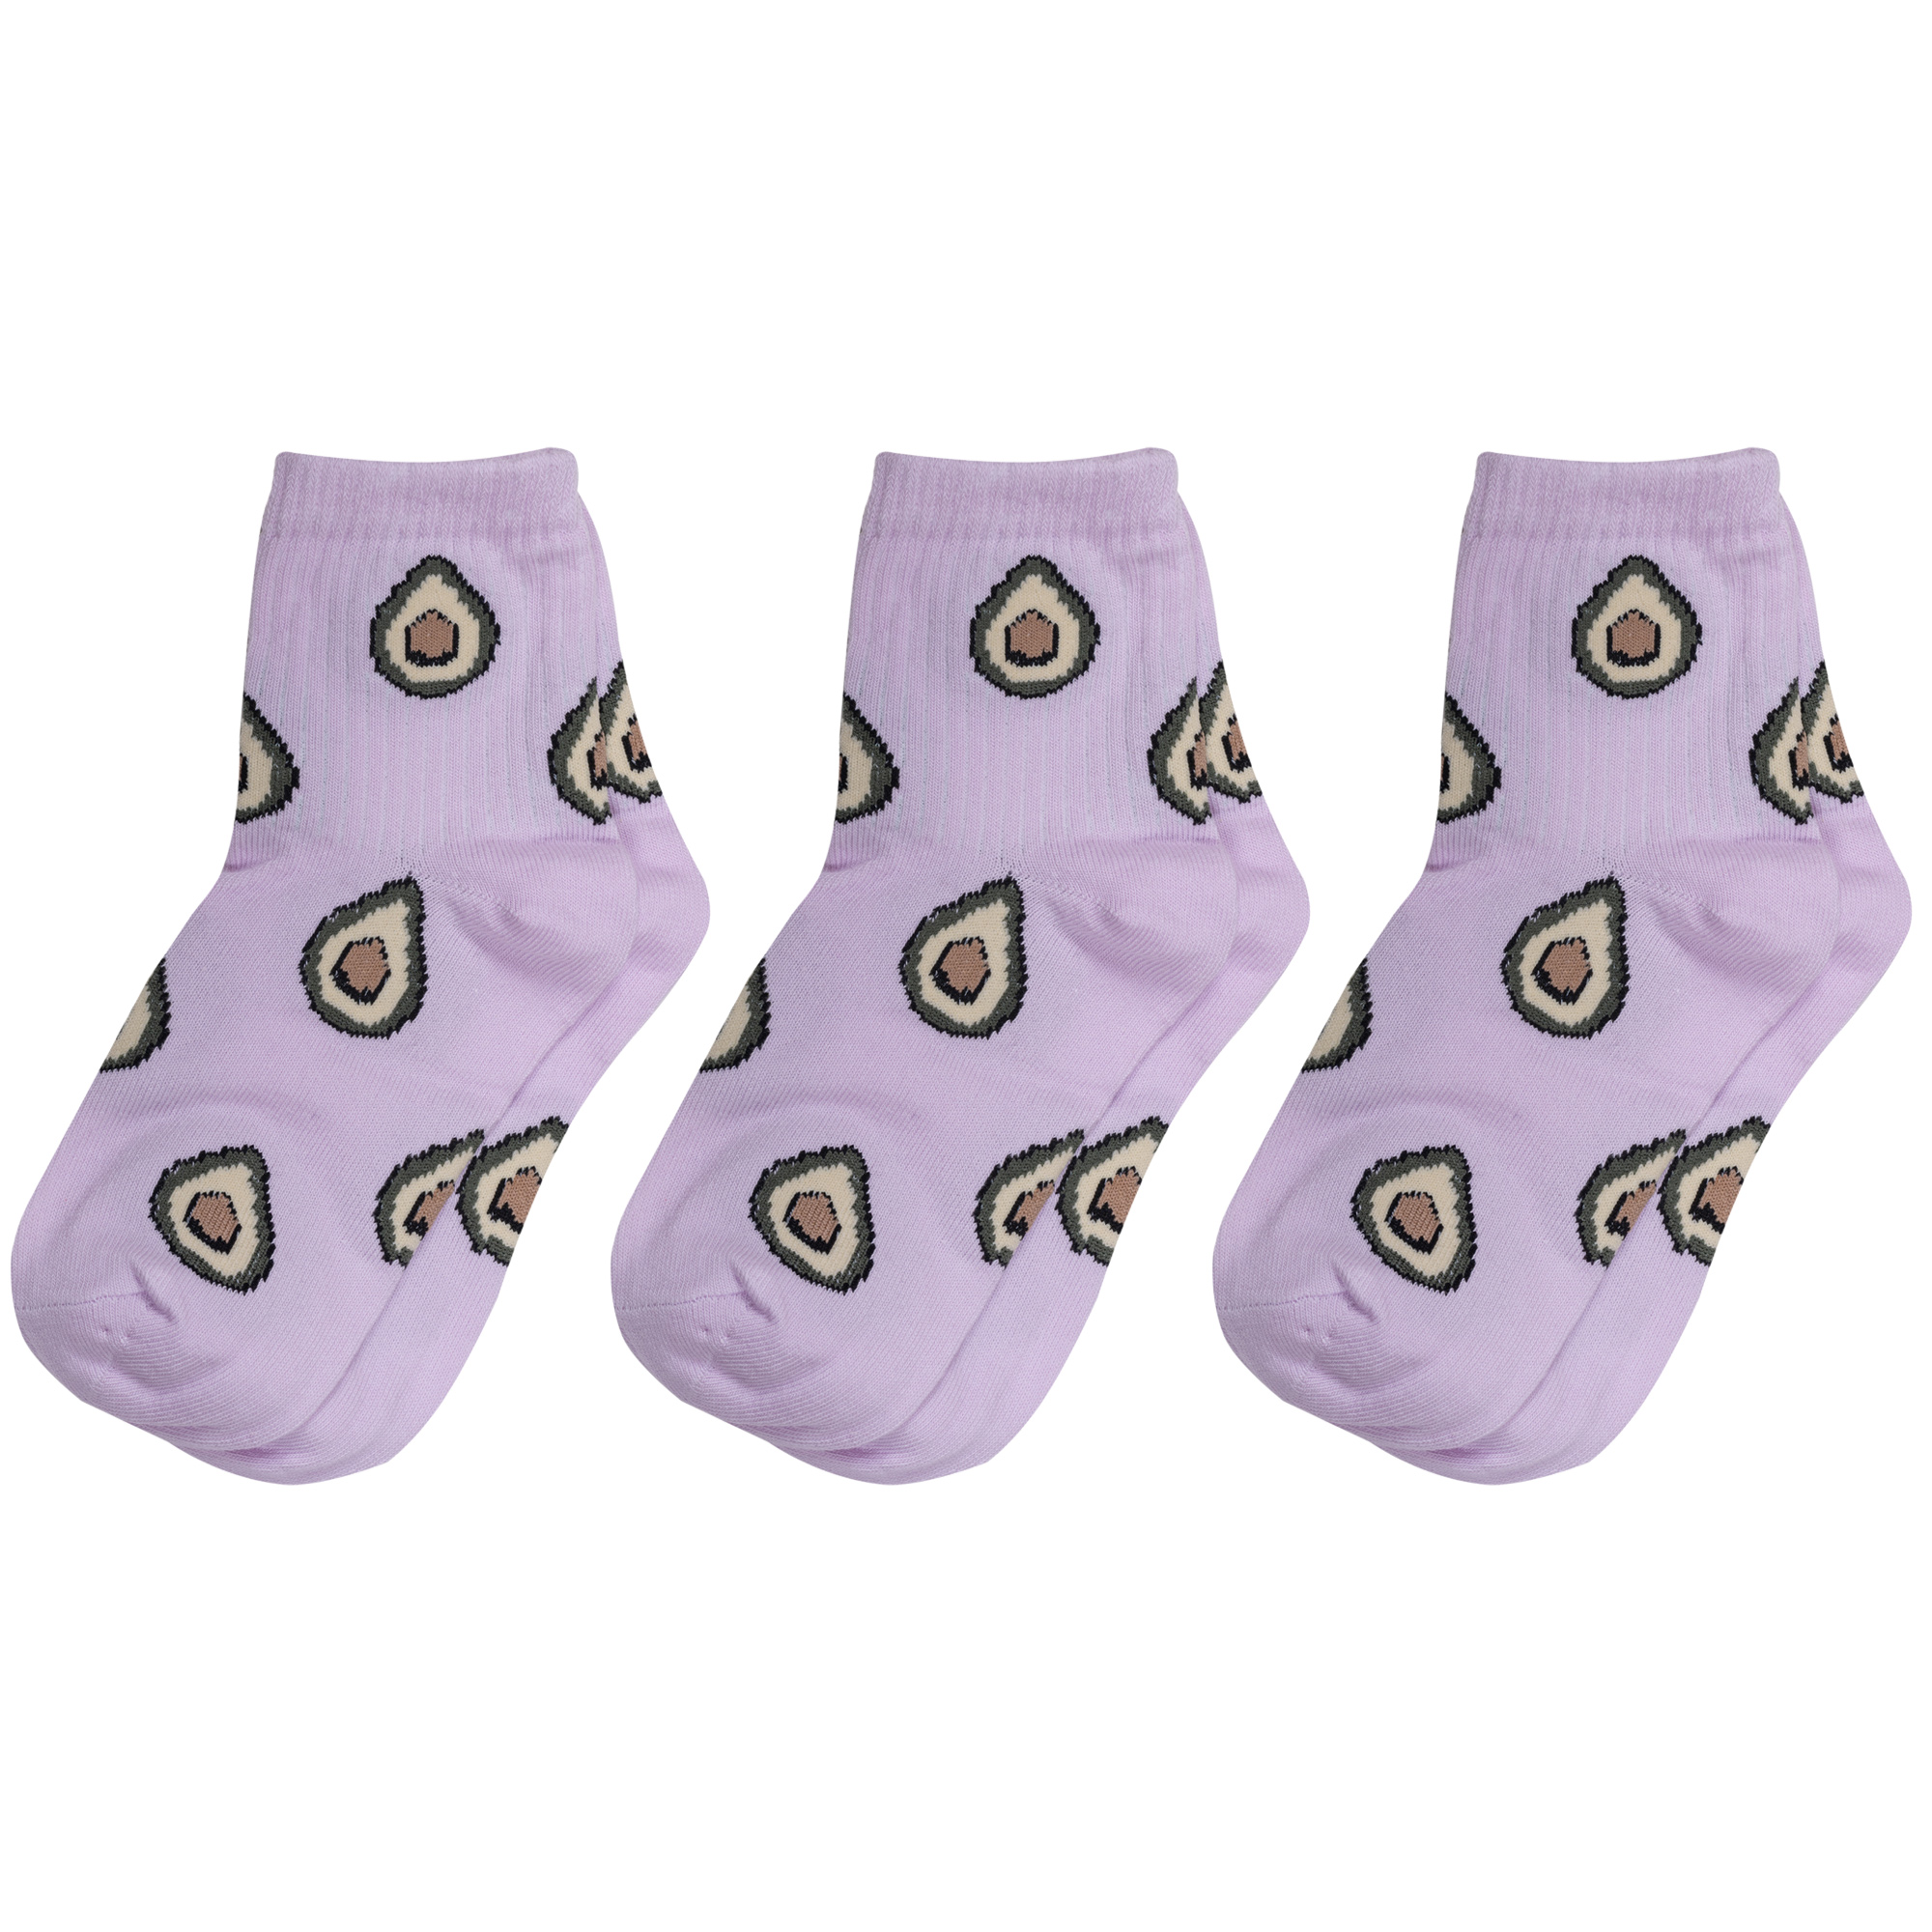 Носки для девочек Альтаир 3-А223 цв. фиолетовый; зеленый; бежевый; коричневый р. 30